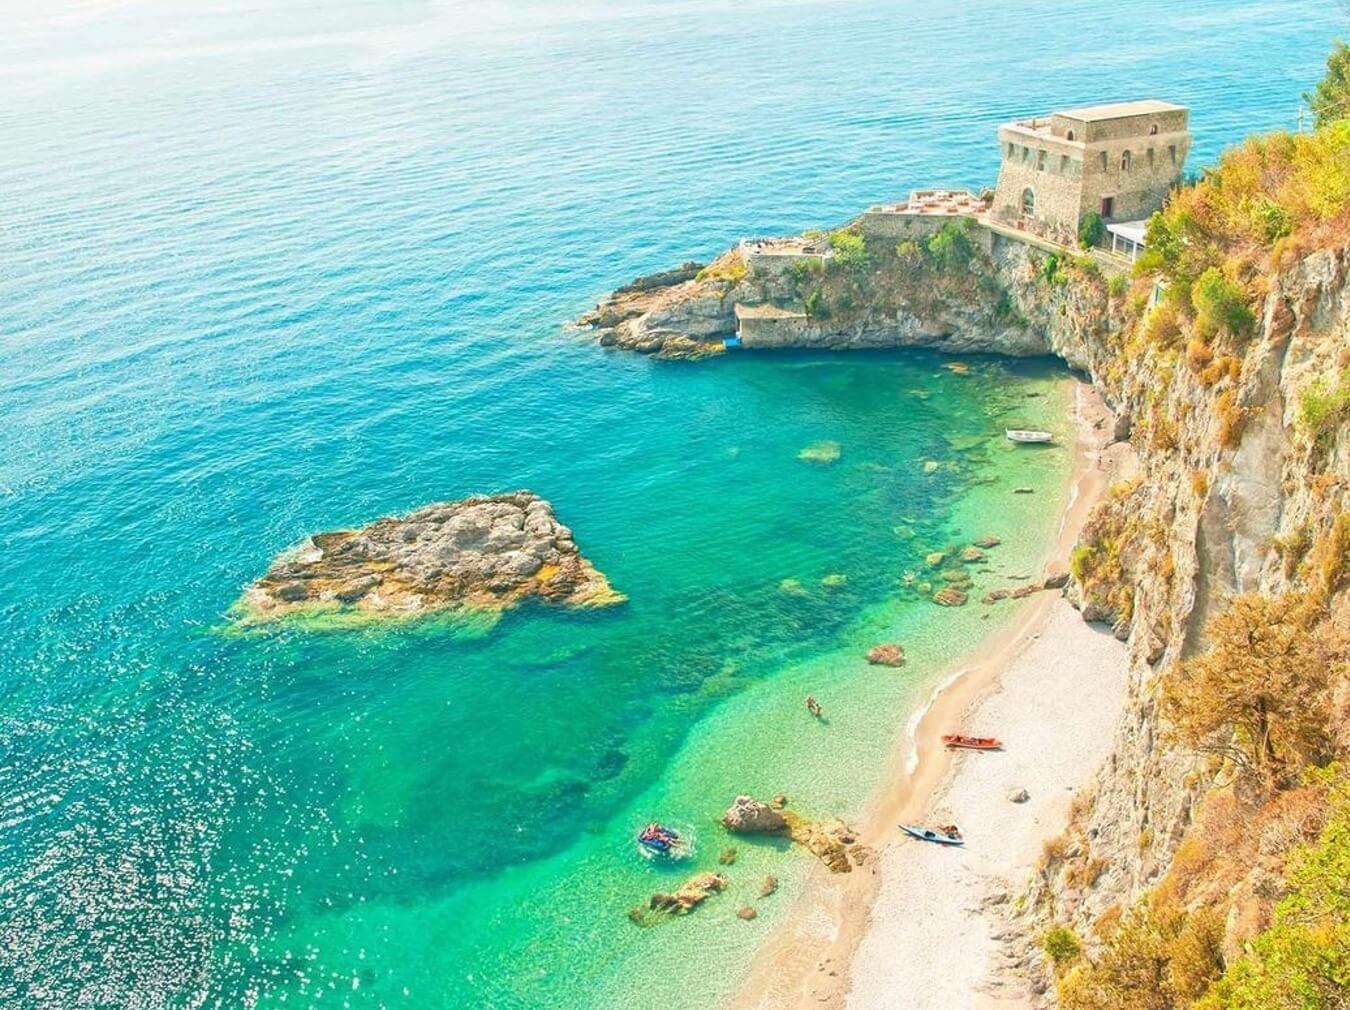 Il Duoglio Spiaggia, Amalfi Overview